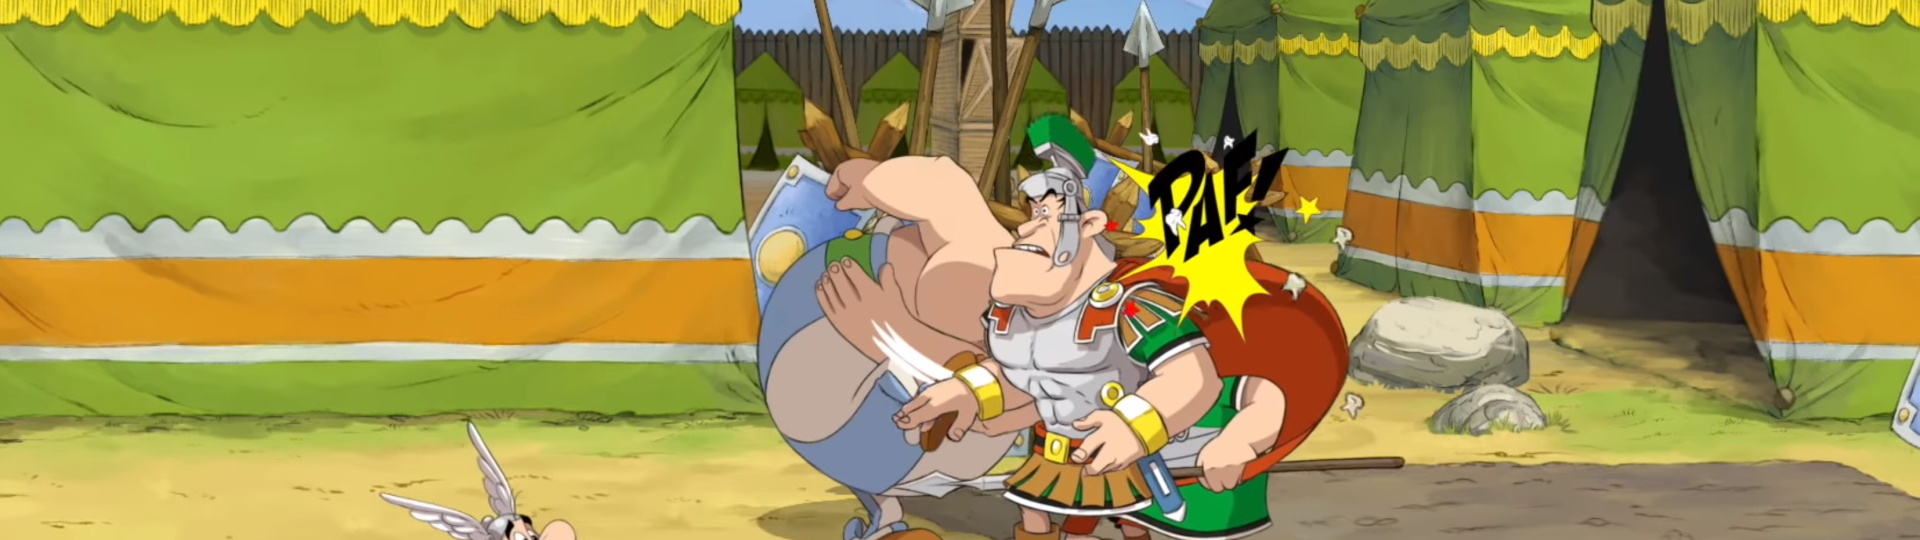 Nová mlátička s Asterixem a Obelixem dorazí na podzim na PS4 | Videa